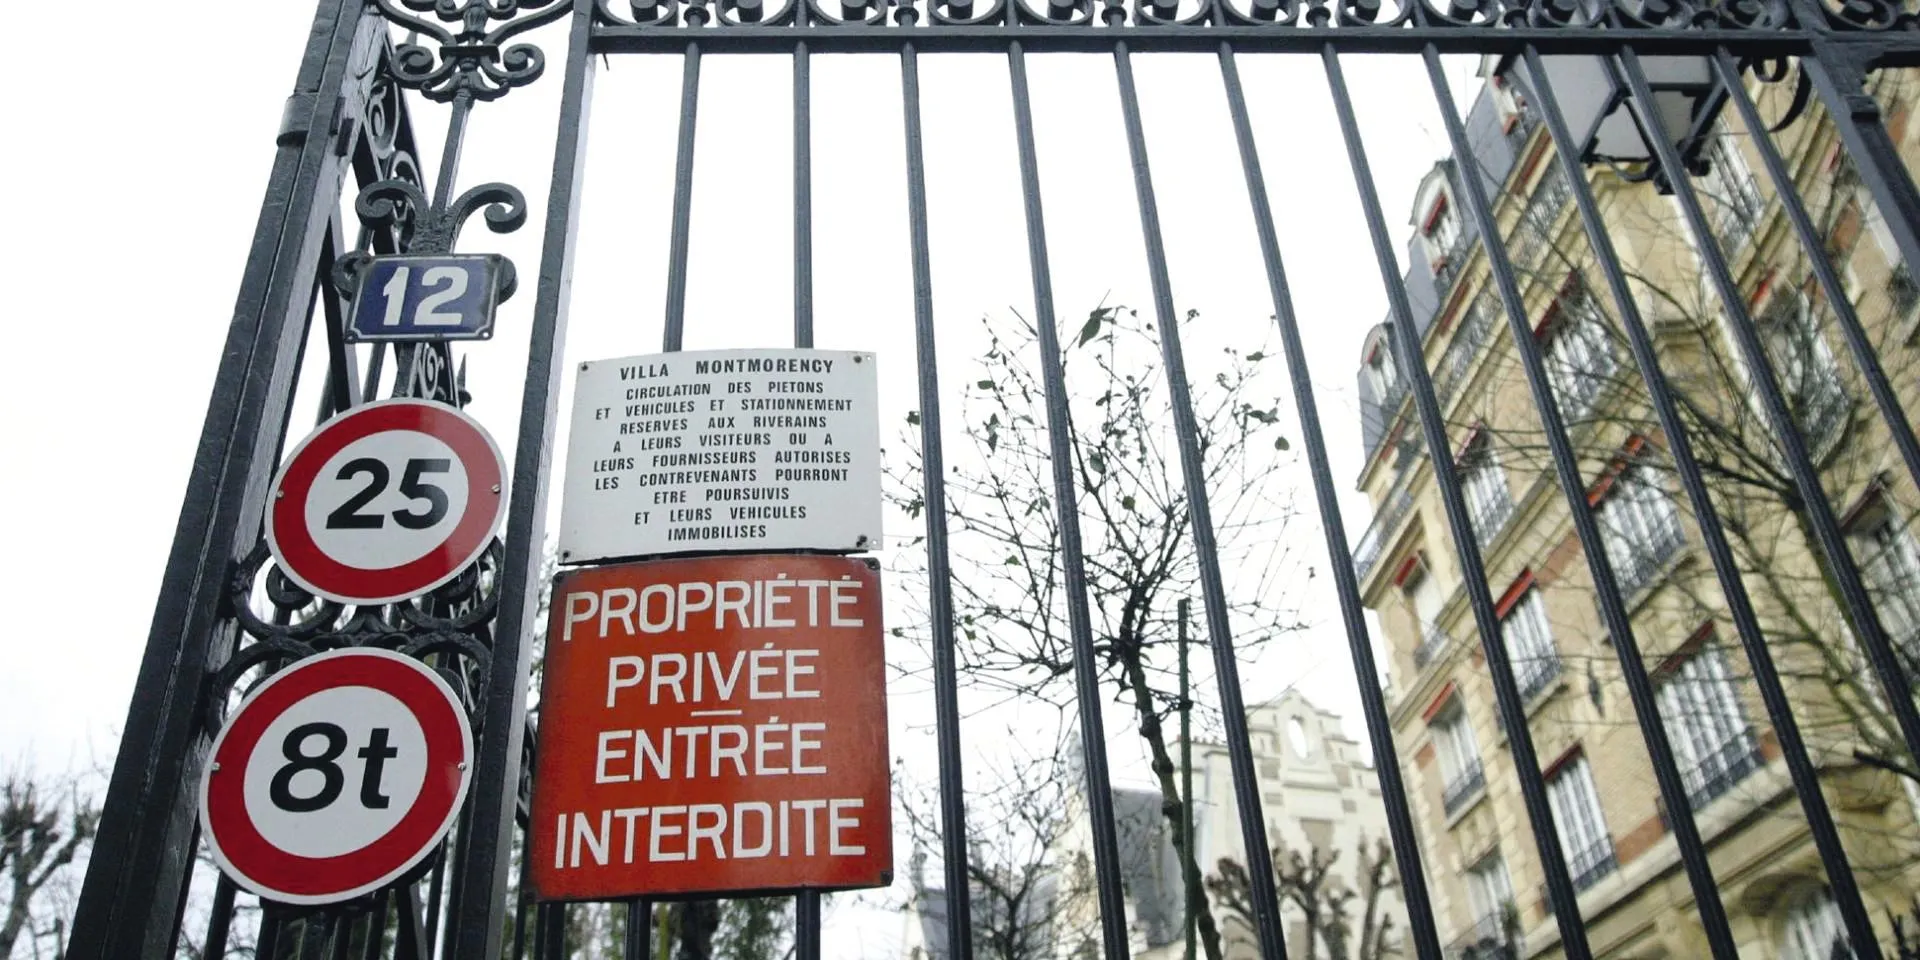 Photographie de l'entrée
de la Villa Montmorency,
L'Équipe.fr.